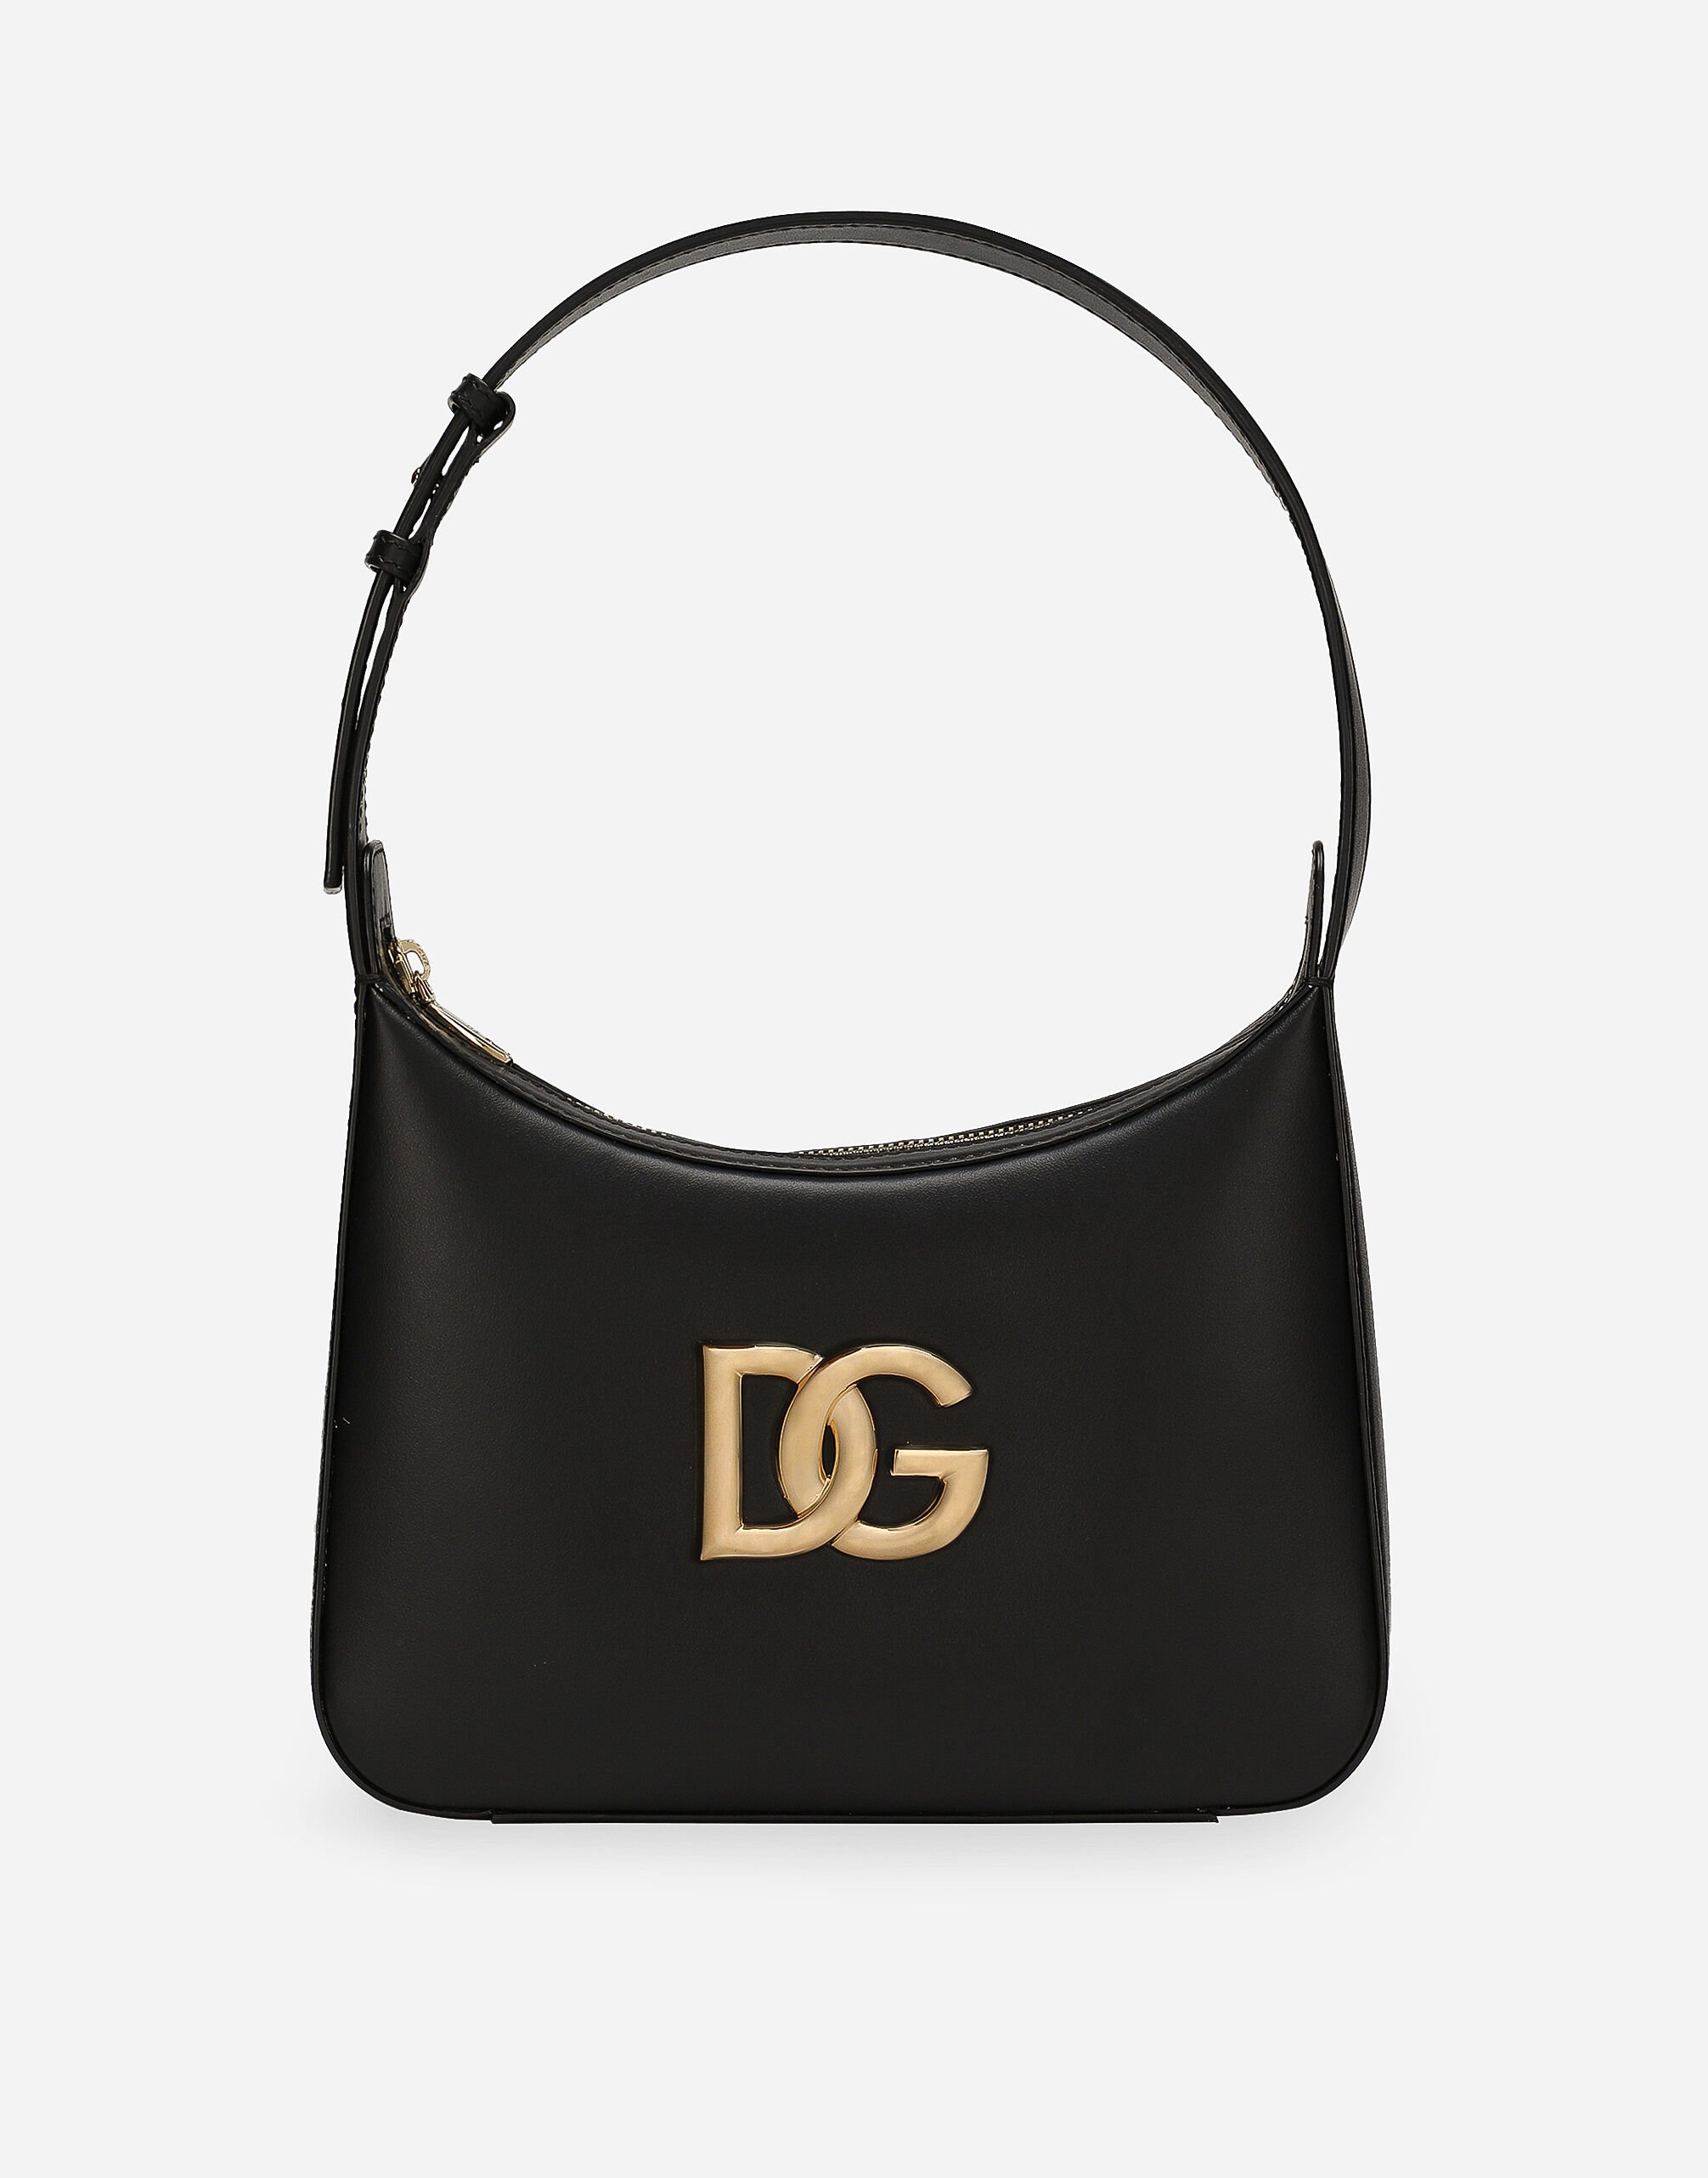 Dolce & Gabbana 3.5 shoulder bag Black F26X8TFMMHN